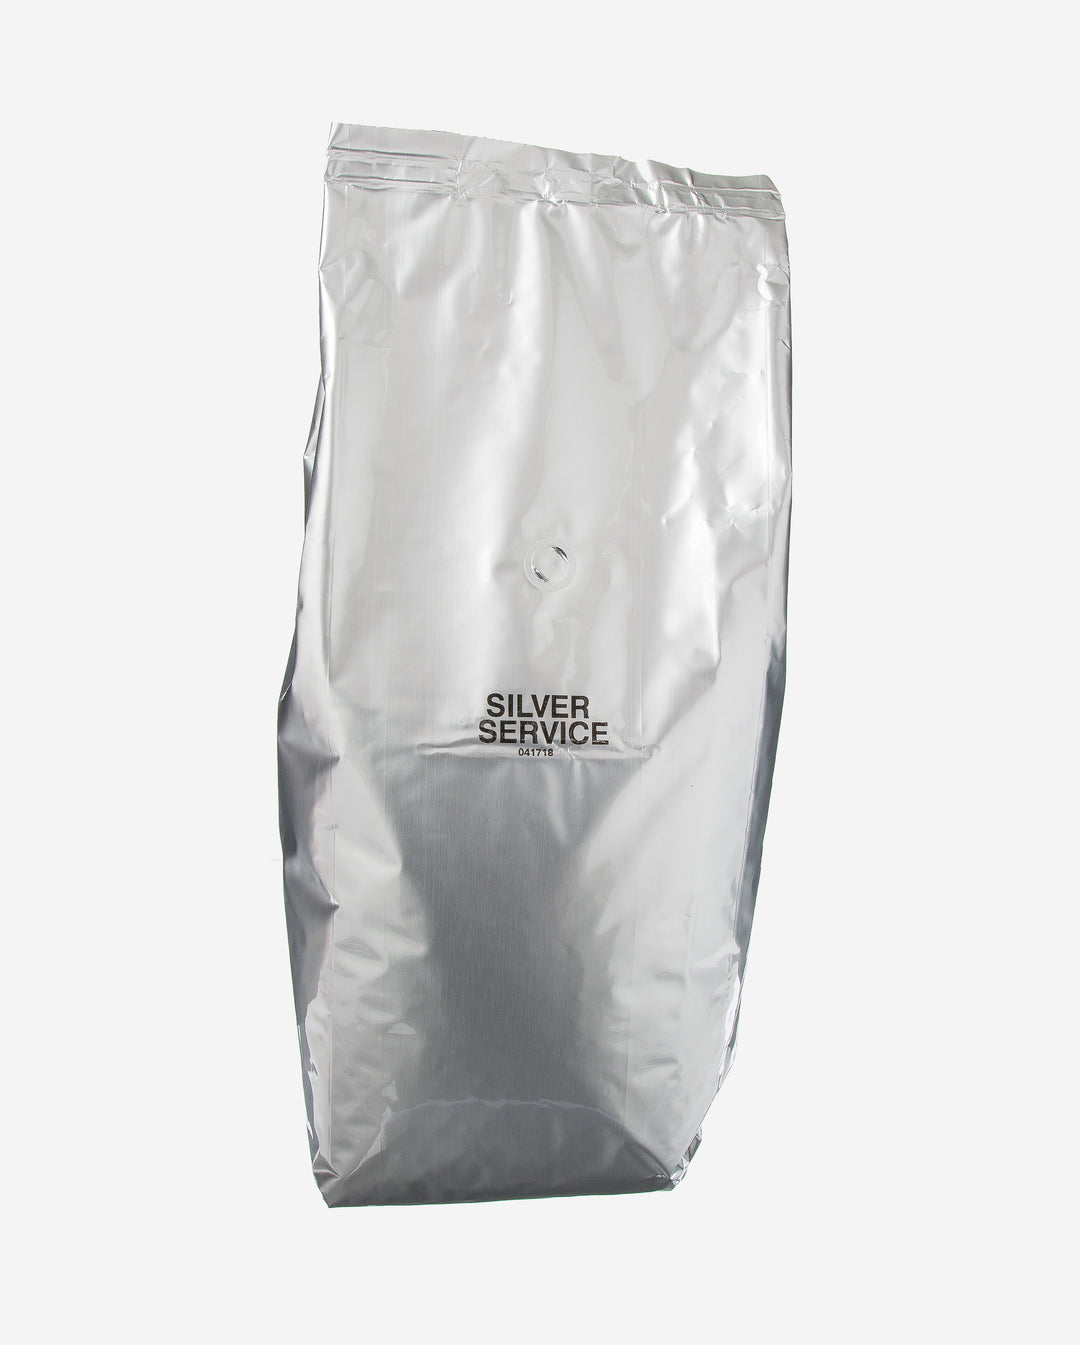 Red Diamond 100% Arabica Silver Service Coffee-5 lb.-2/Case